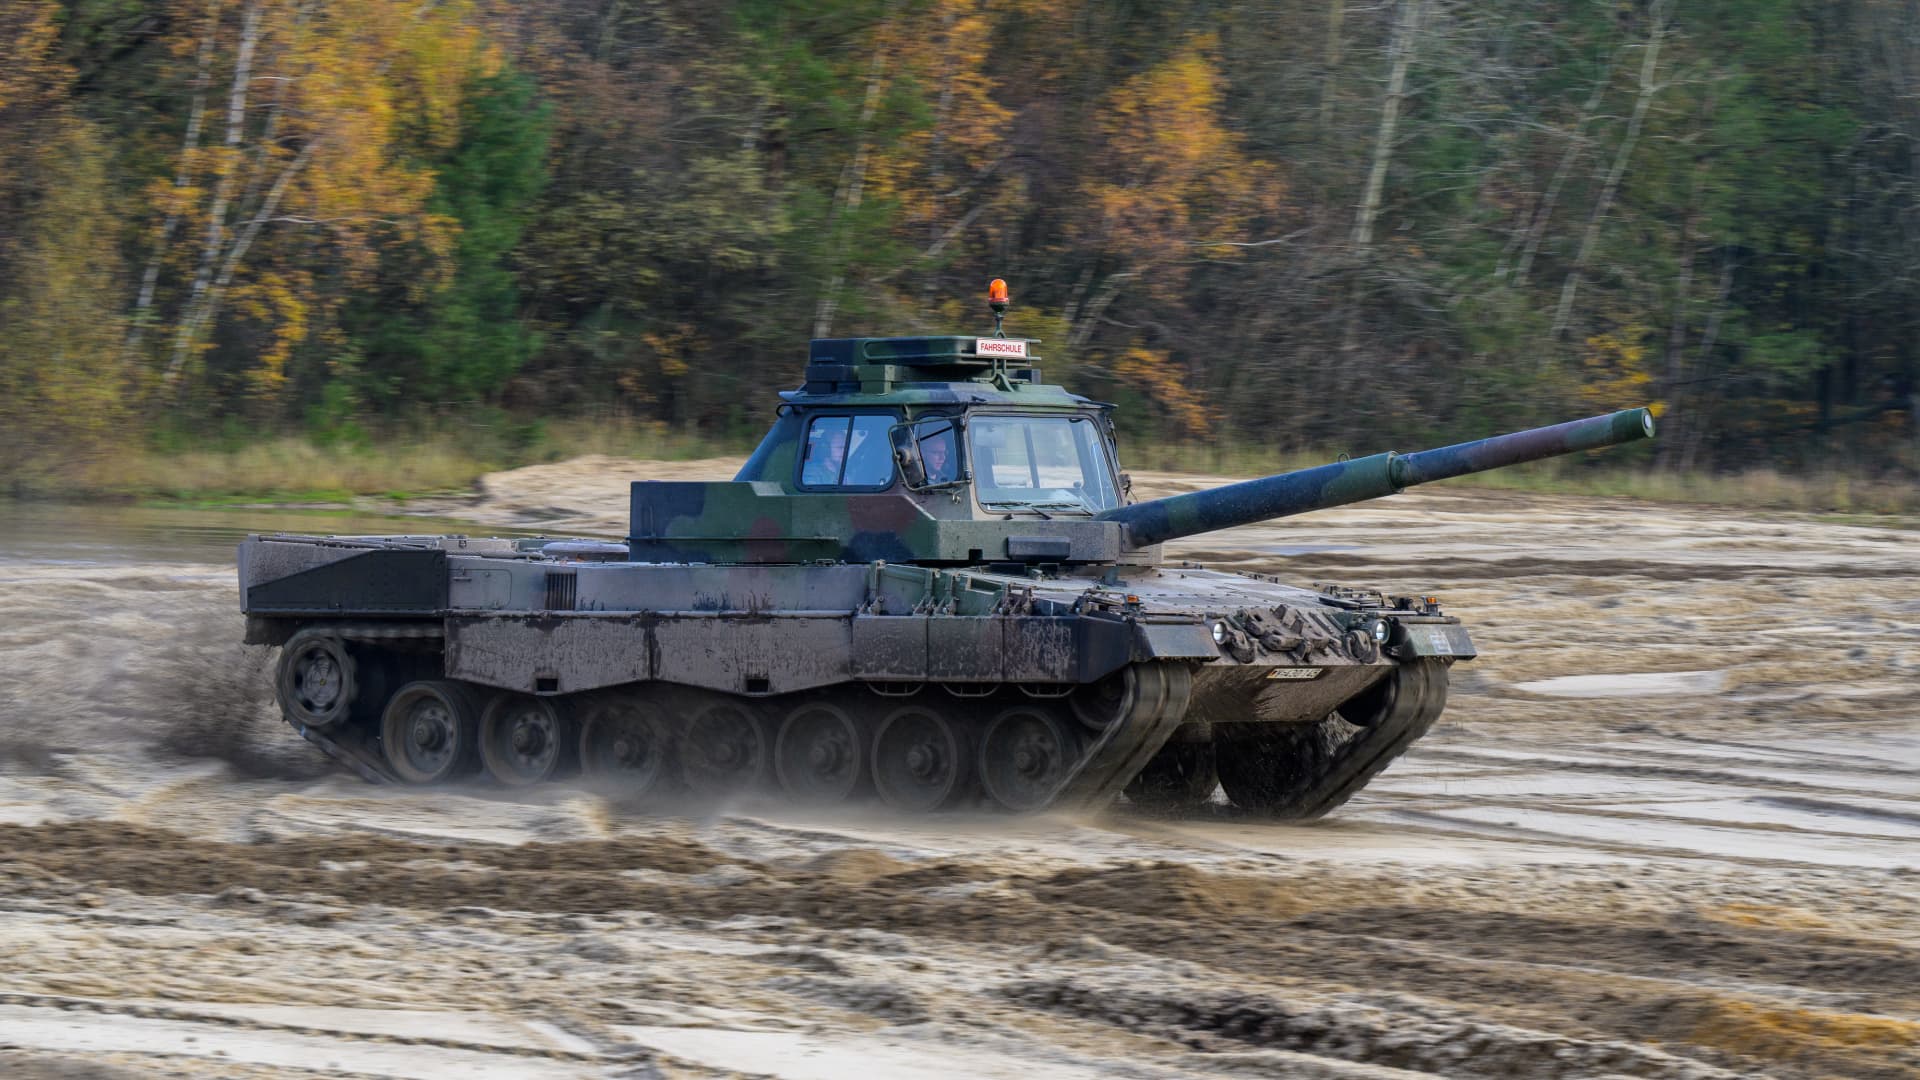 A Leopard 2 A4 main battle tank.